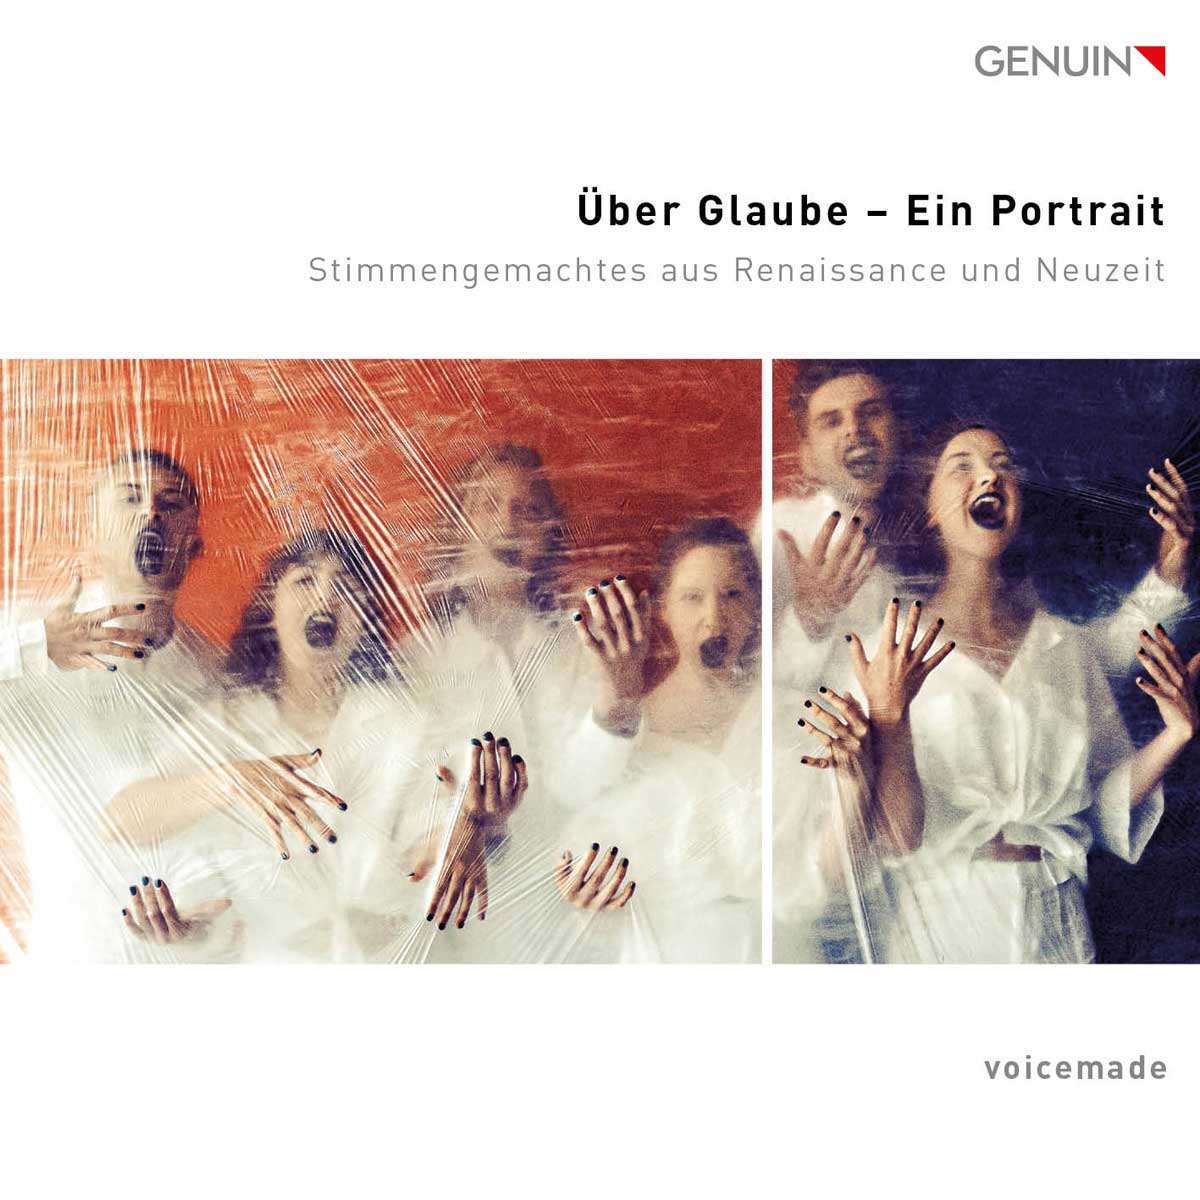 CD album cover 'ber Glaube  Ein Portrait ' (GEN 23798) with voicemade